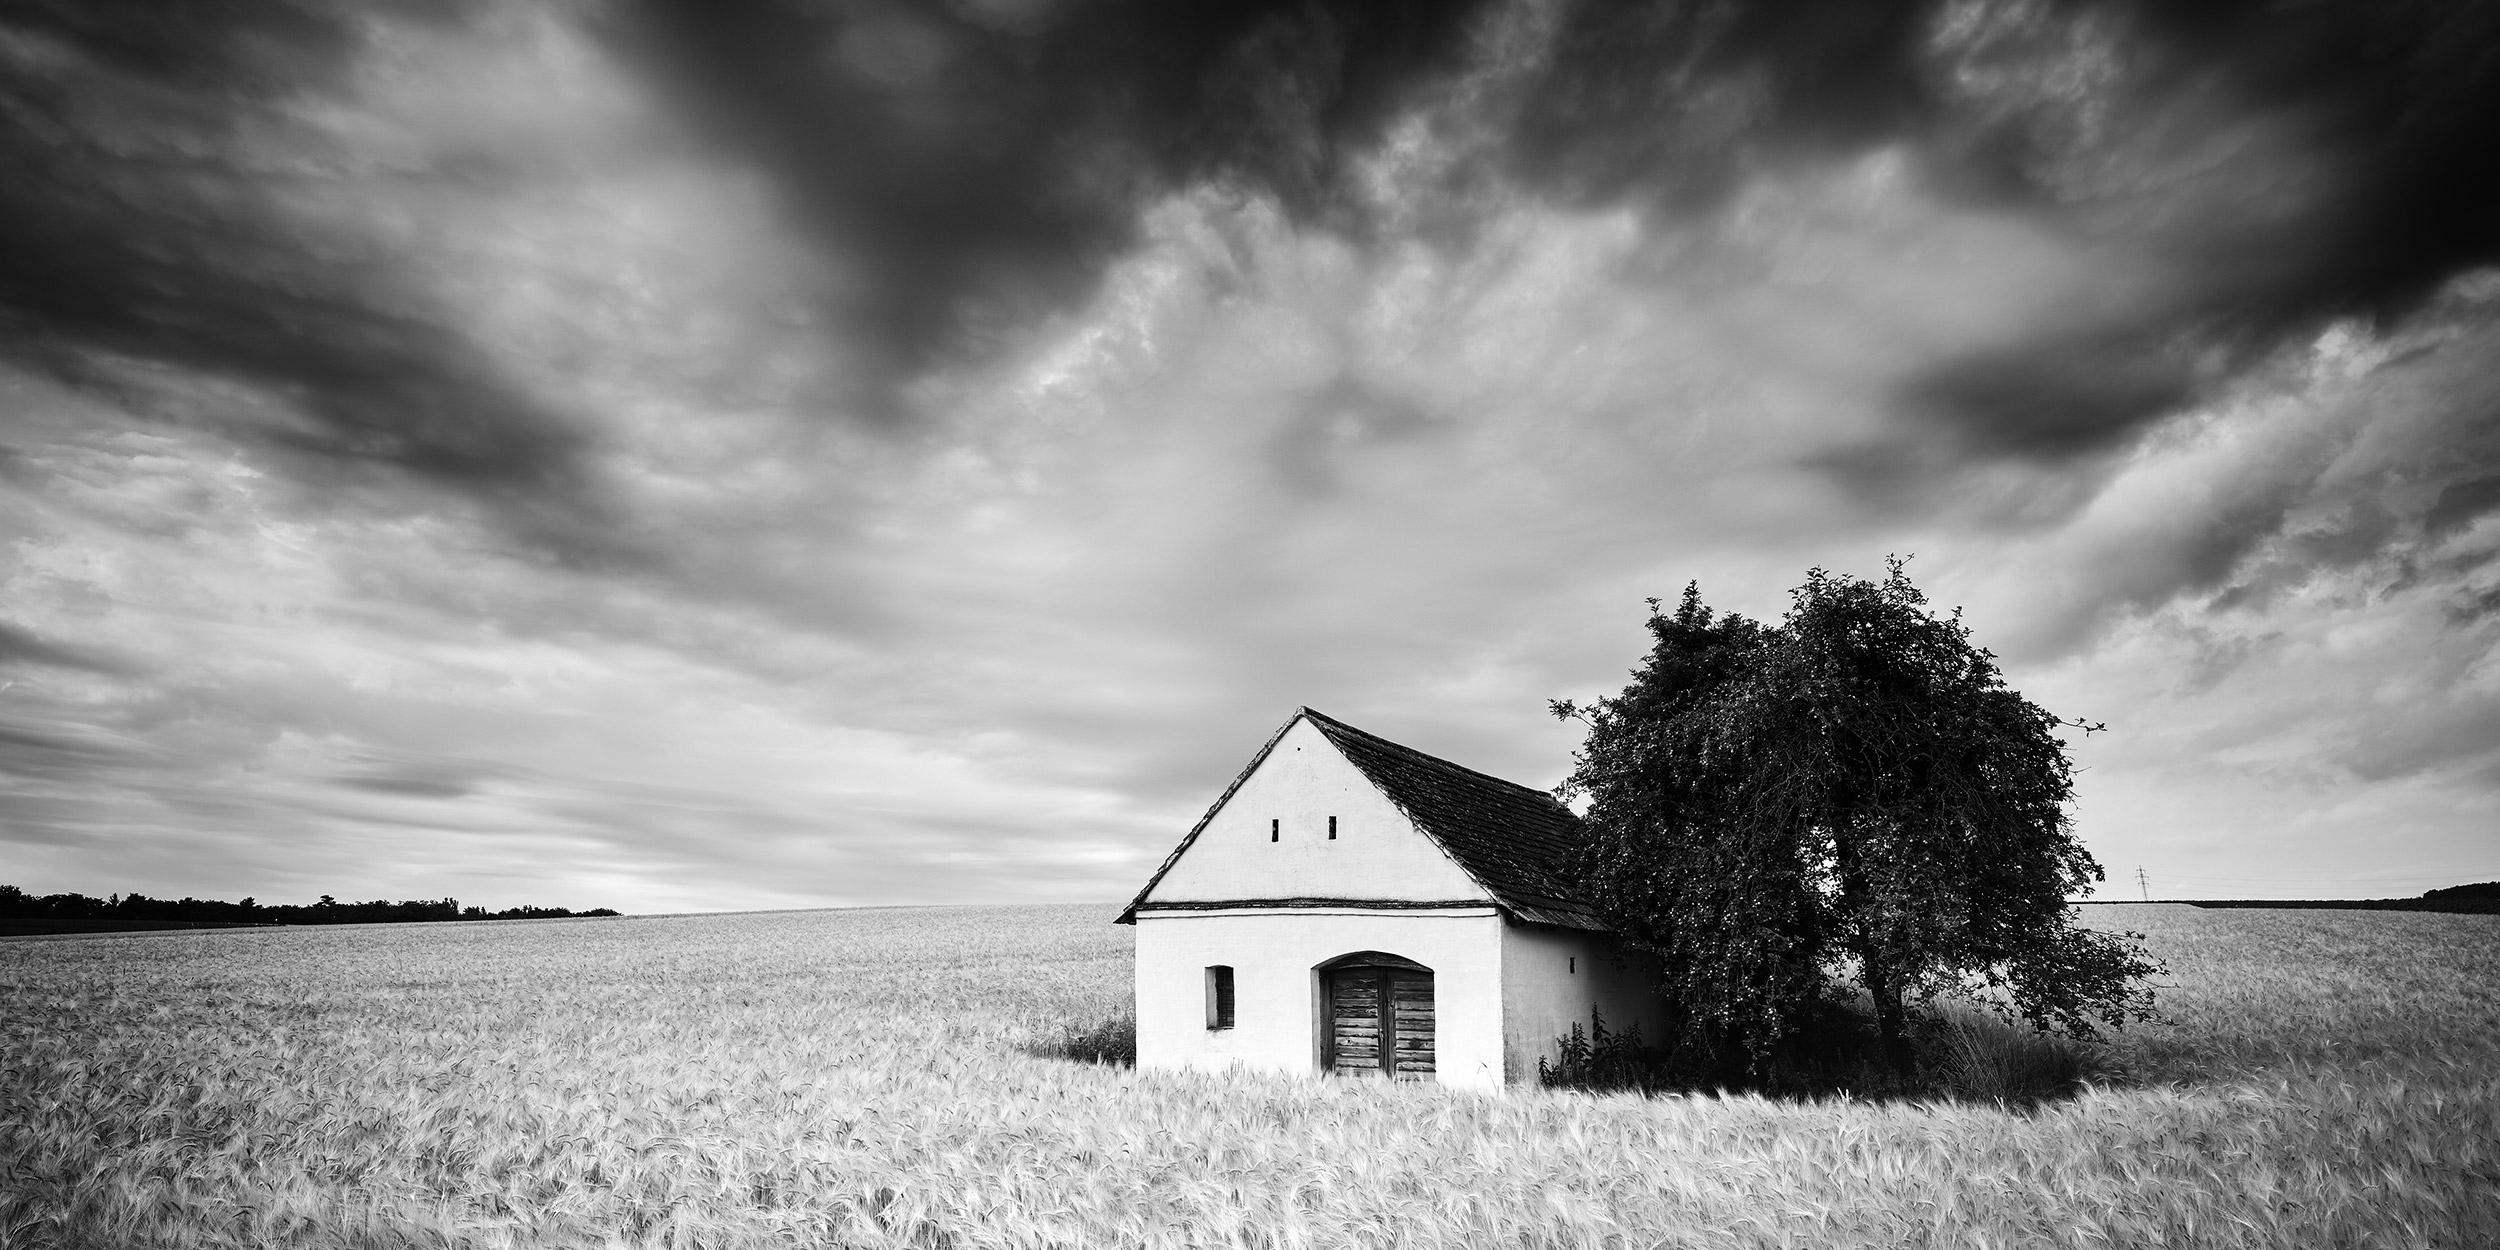 Gerald Berghammer Black and White Photograph – Weinpress House Panorama, Bauernhof, Schwarz-Weiß-Fotografie, Kunstlandschaft